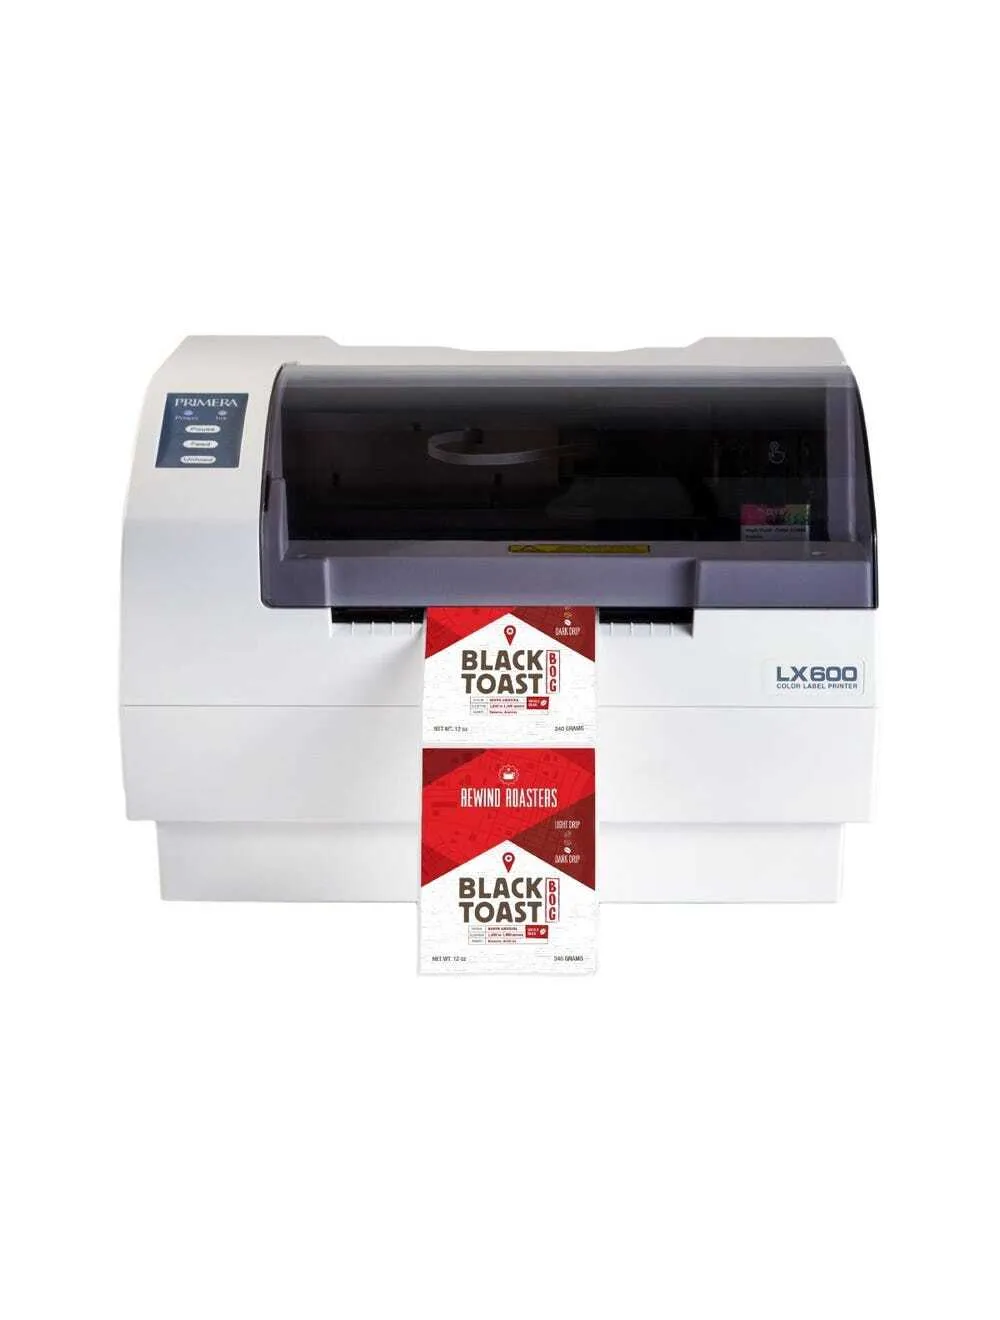 LX600e Color Label Printer